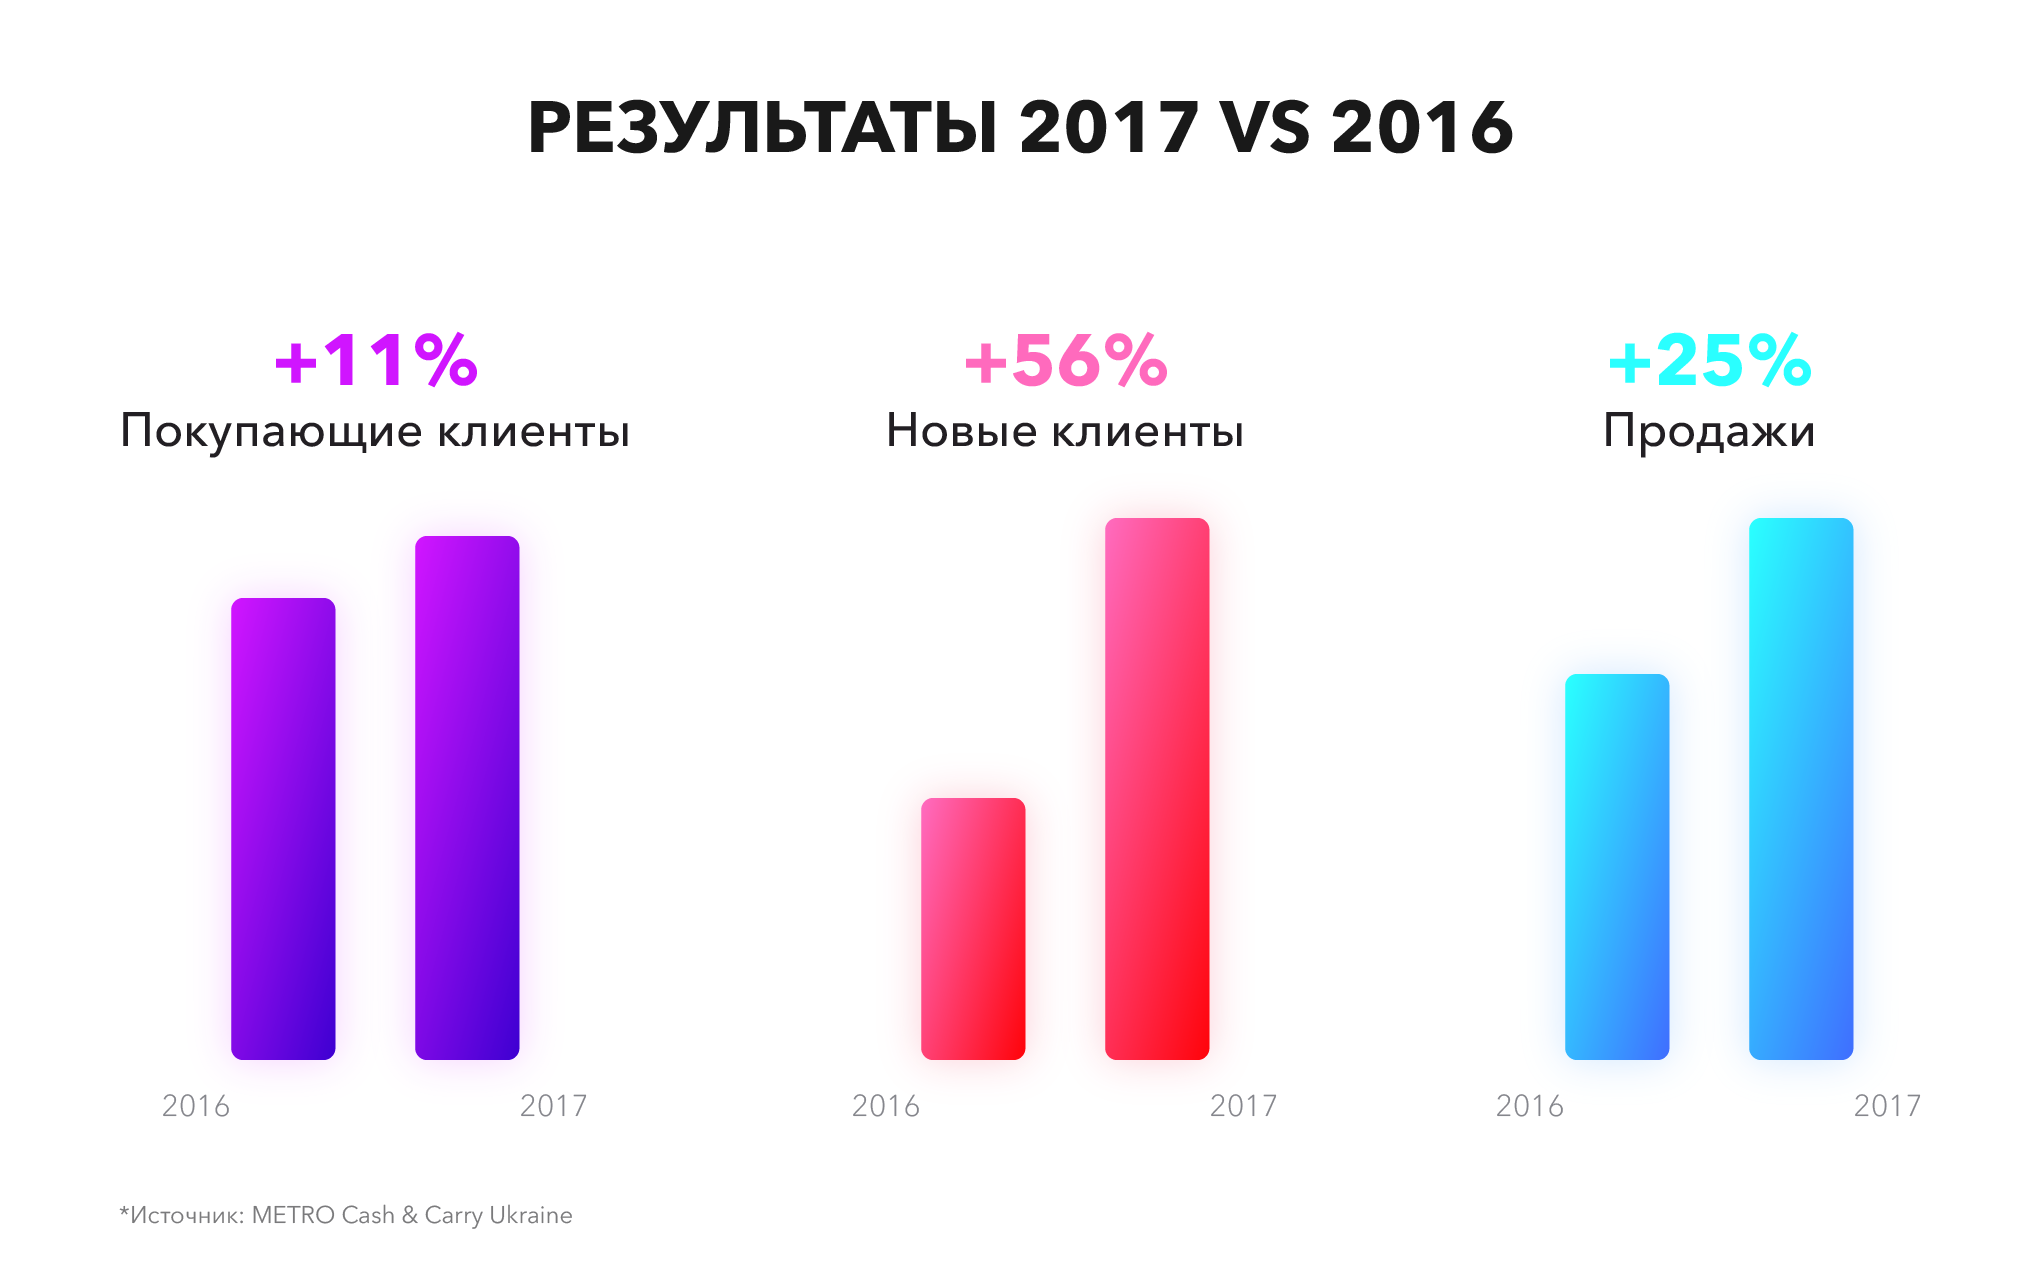  Metro Cash & Carry Ukraine увеличил количество новых клиентов